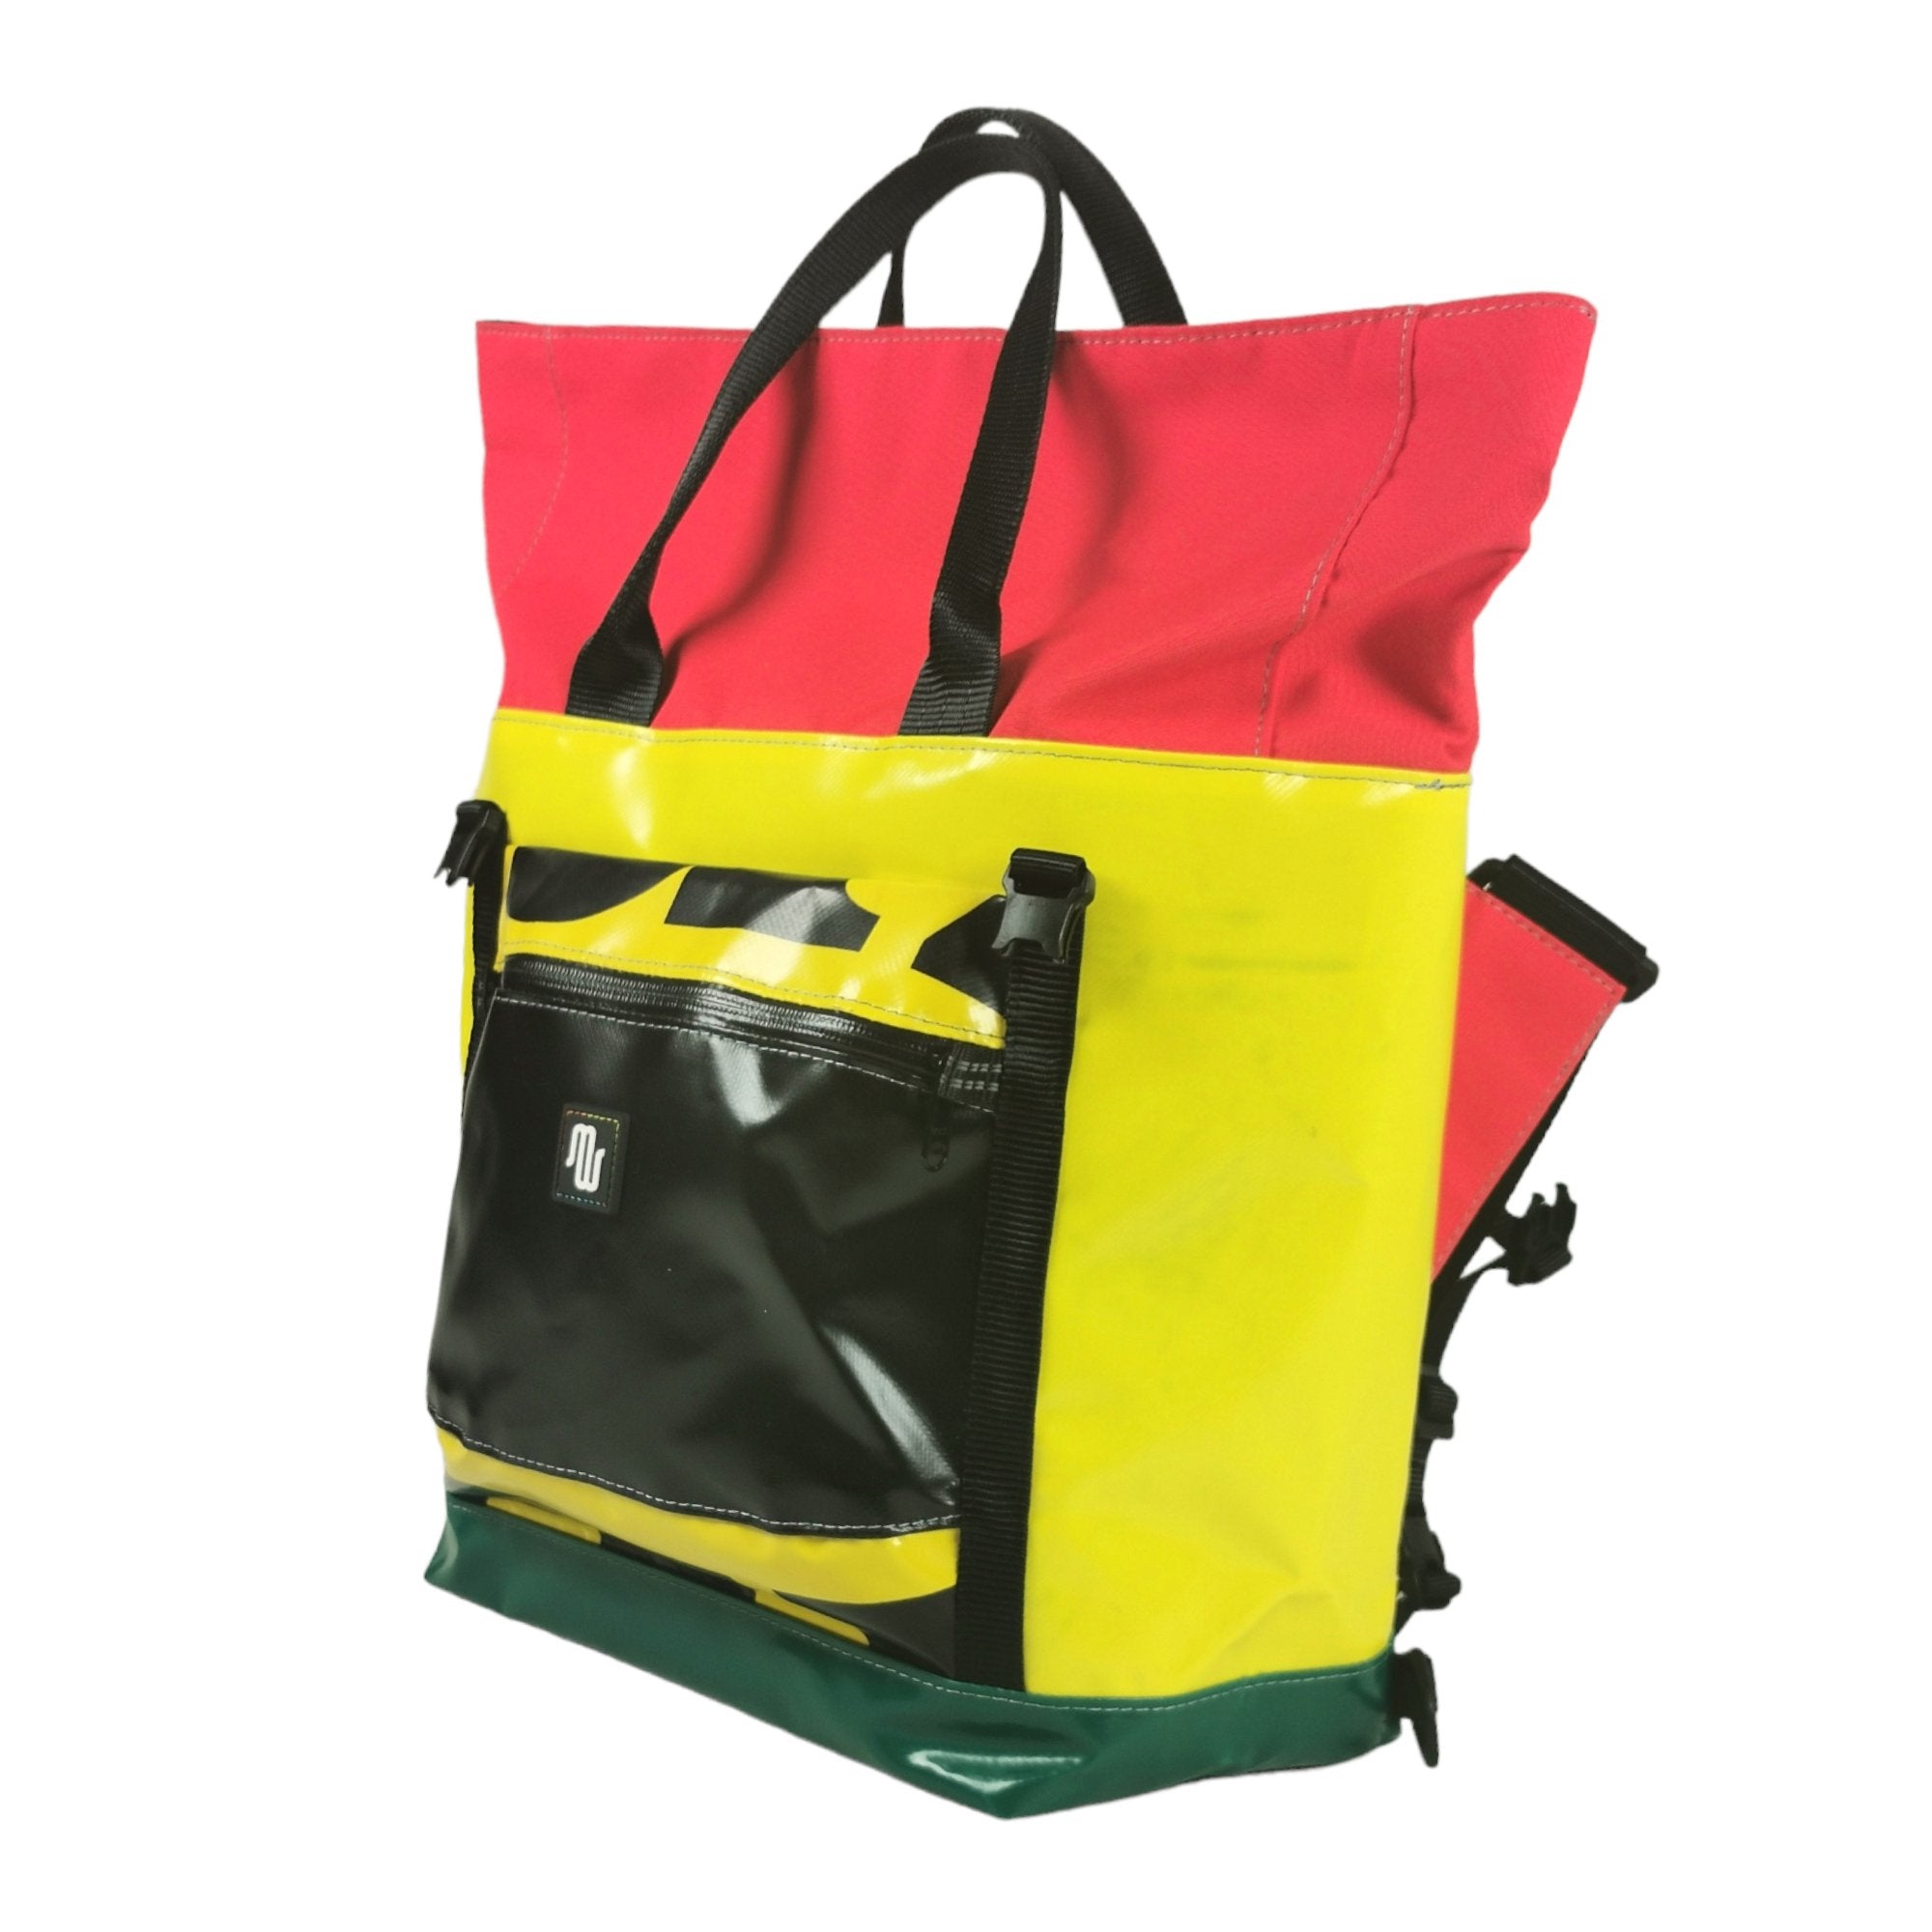 TAKE No. 012 - Shoulder bag - medencebag